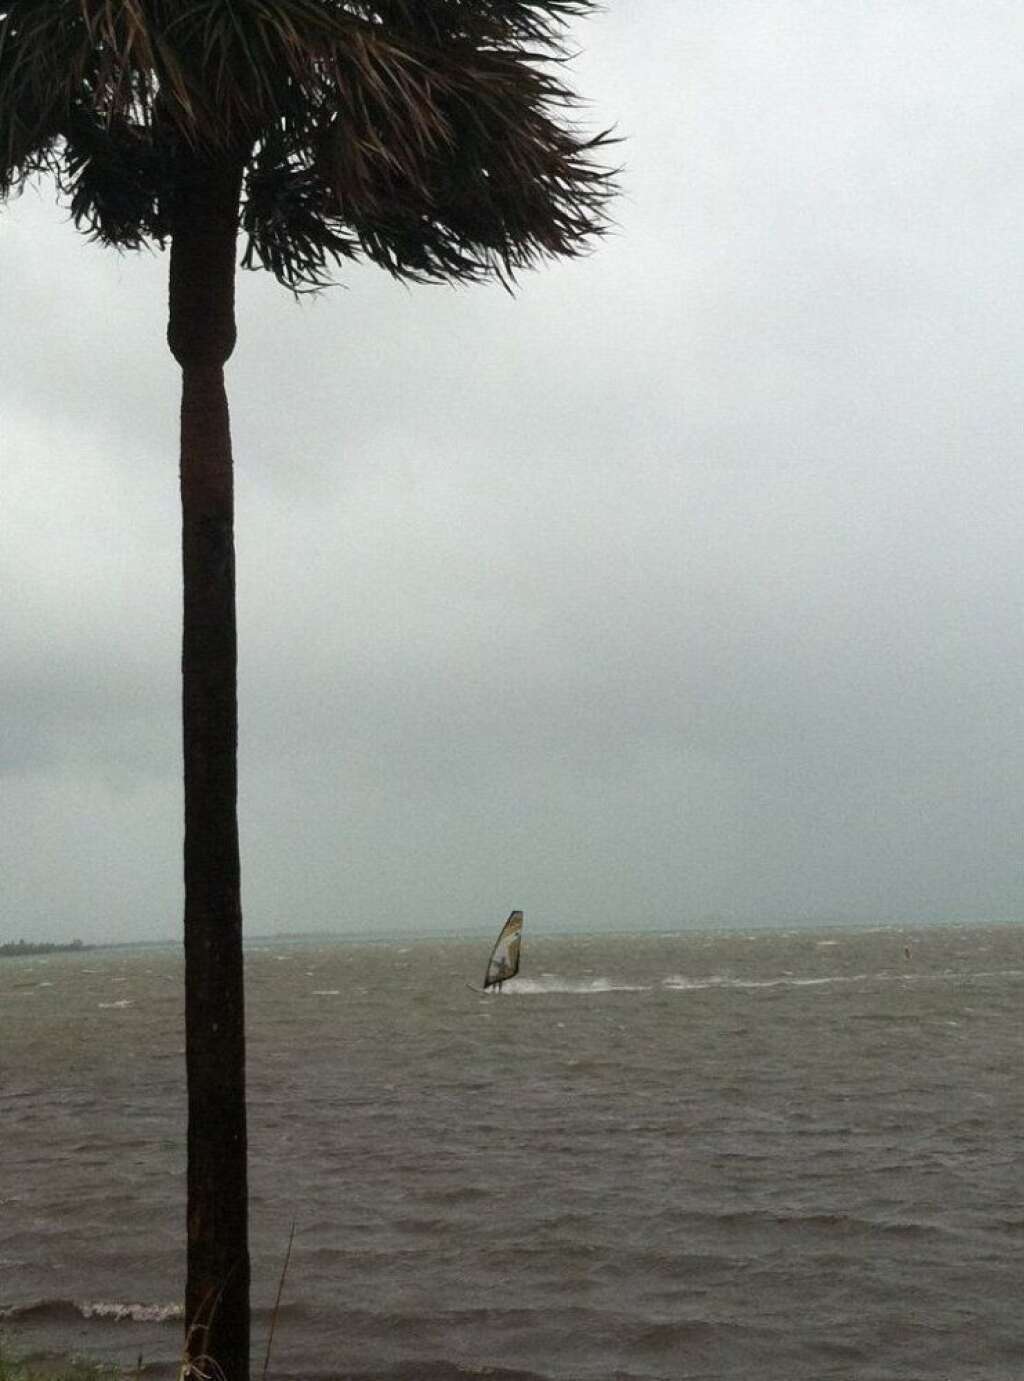 - A windsurfer at Key Biscayne yesterday evening. (CREDIT: Twitter user <a href="https://twitter.com/erikFdowell" target="_hplink">@erikFdowell</a>)